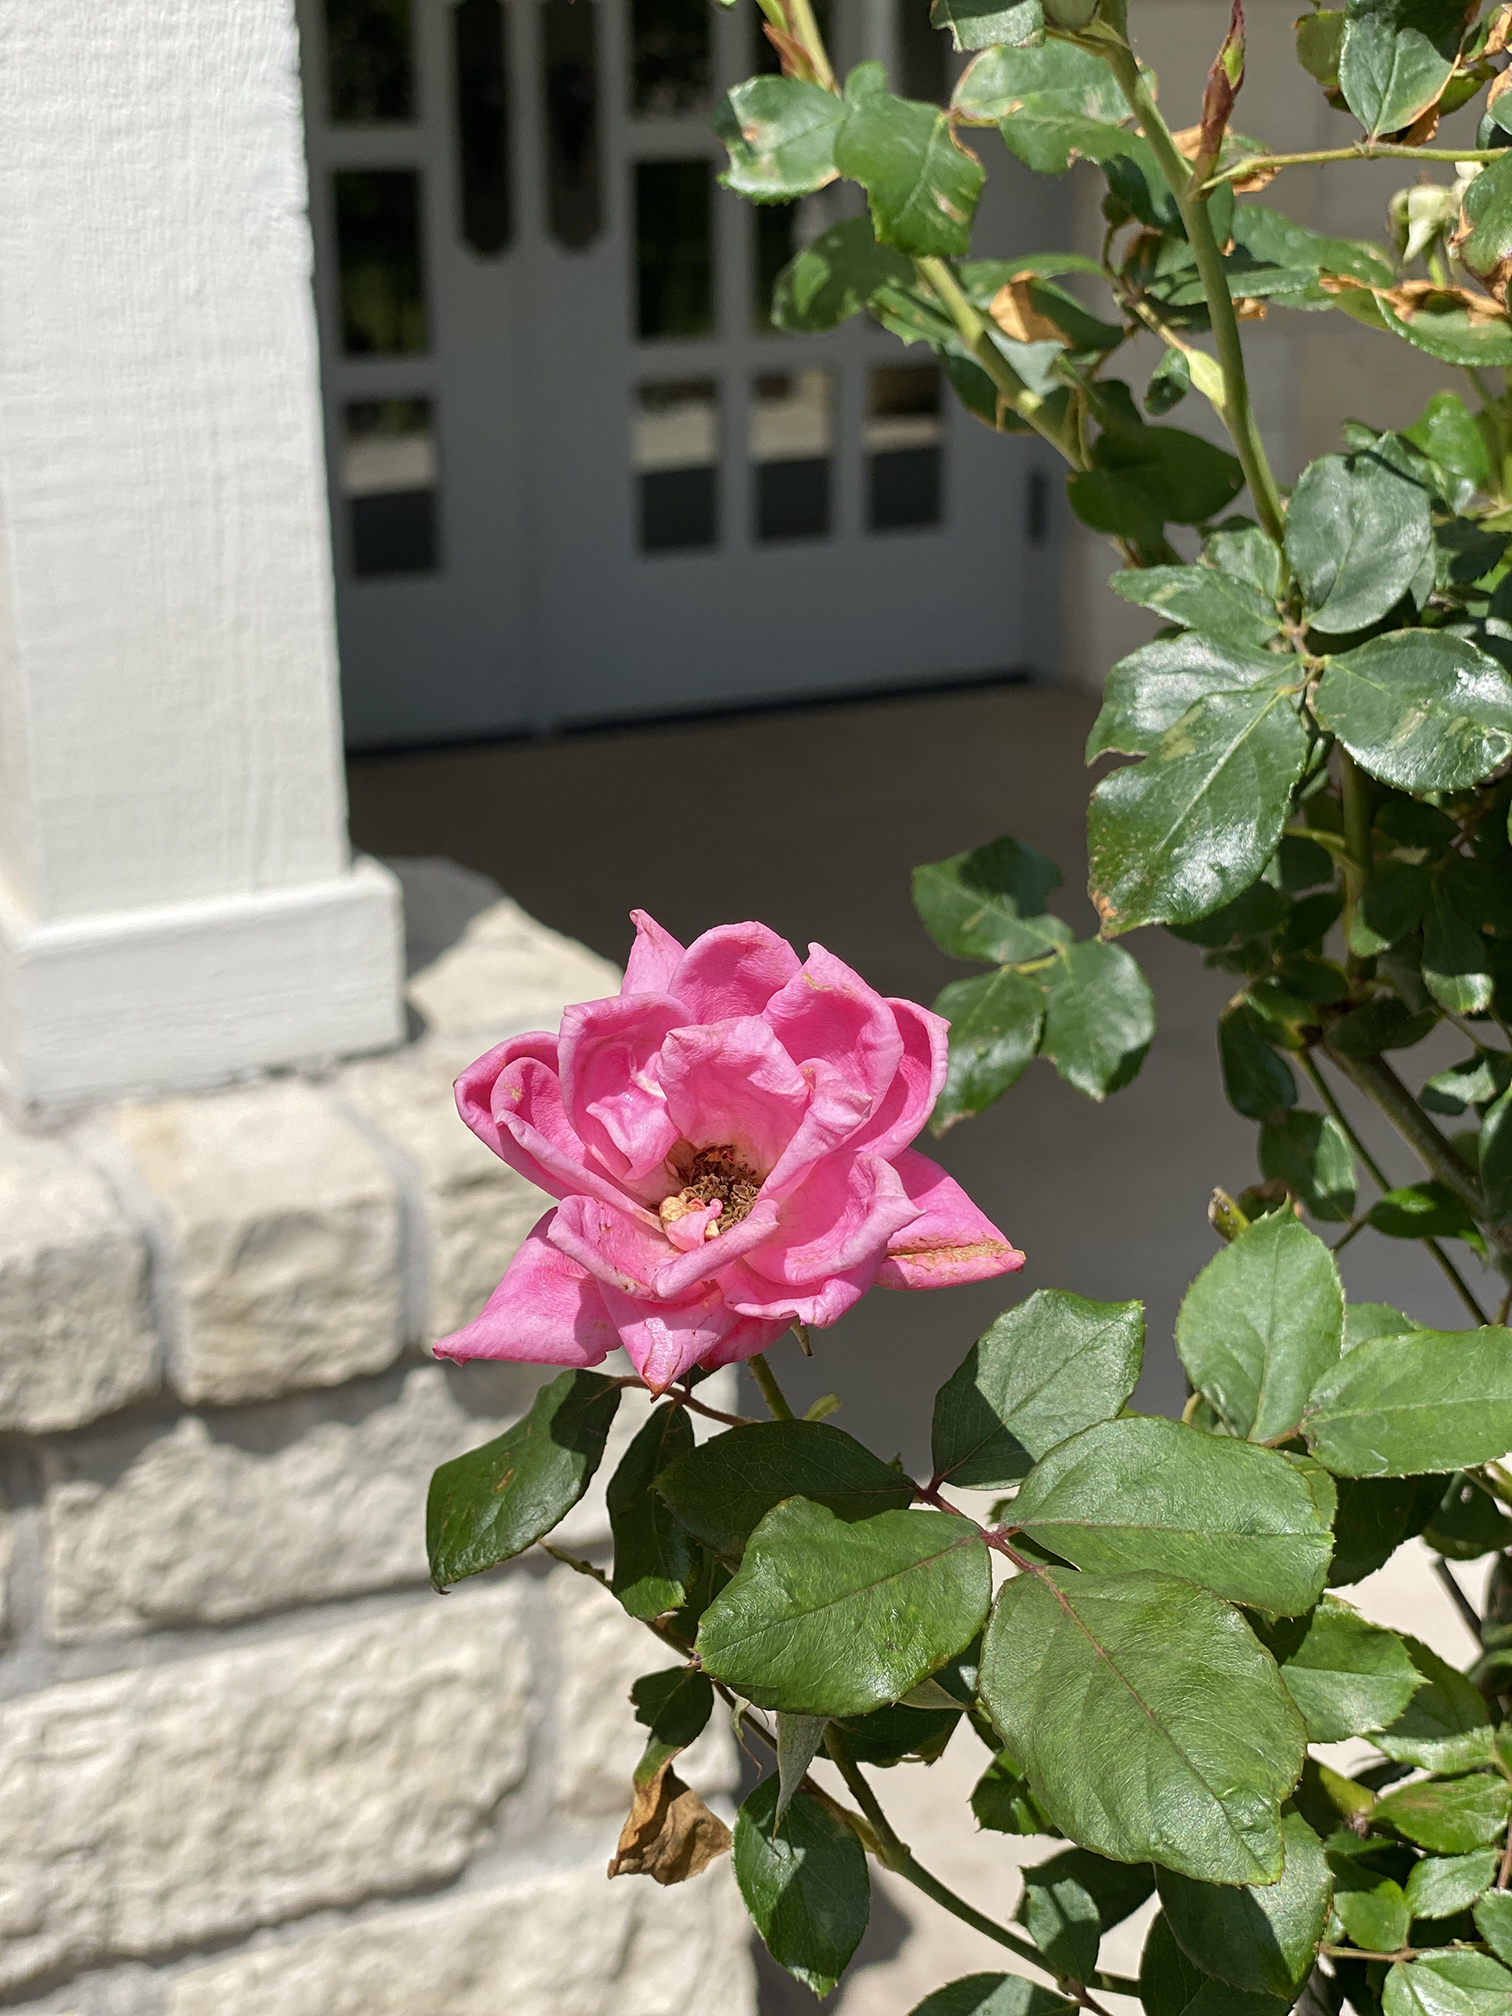 Single Pink Rose on a bush